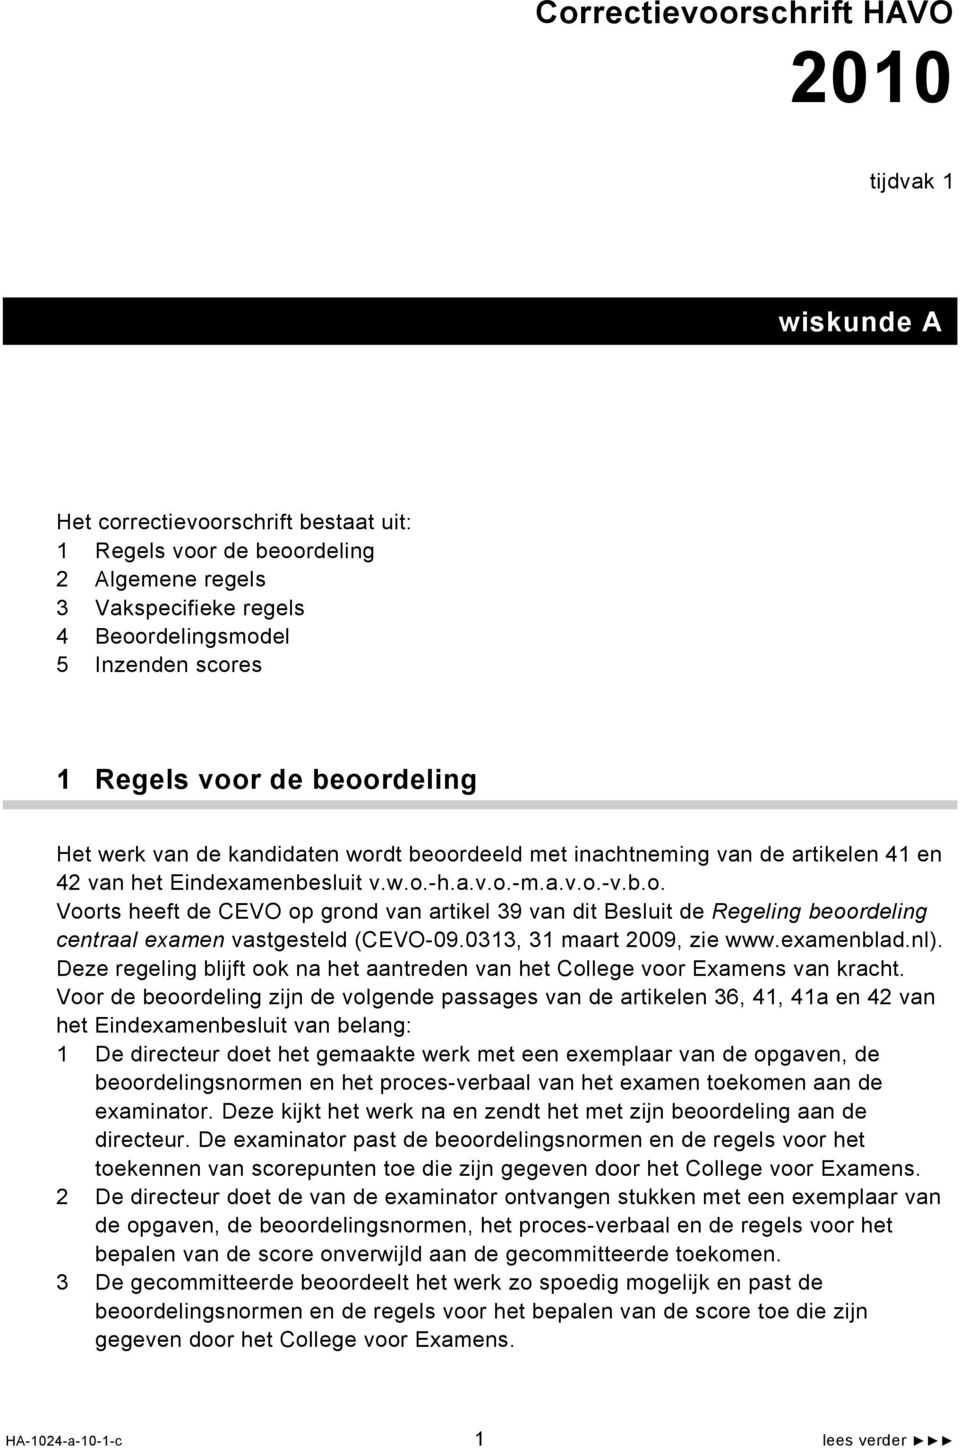 033, 3 maart 009, zie www.examenblad.nl). Deze regeling blijft ook na het aantreden van het College voor Examens van kracht.